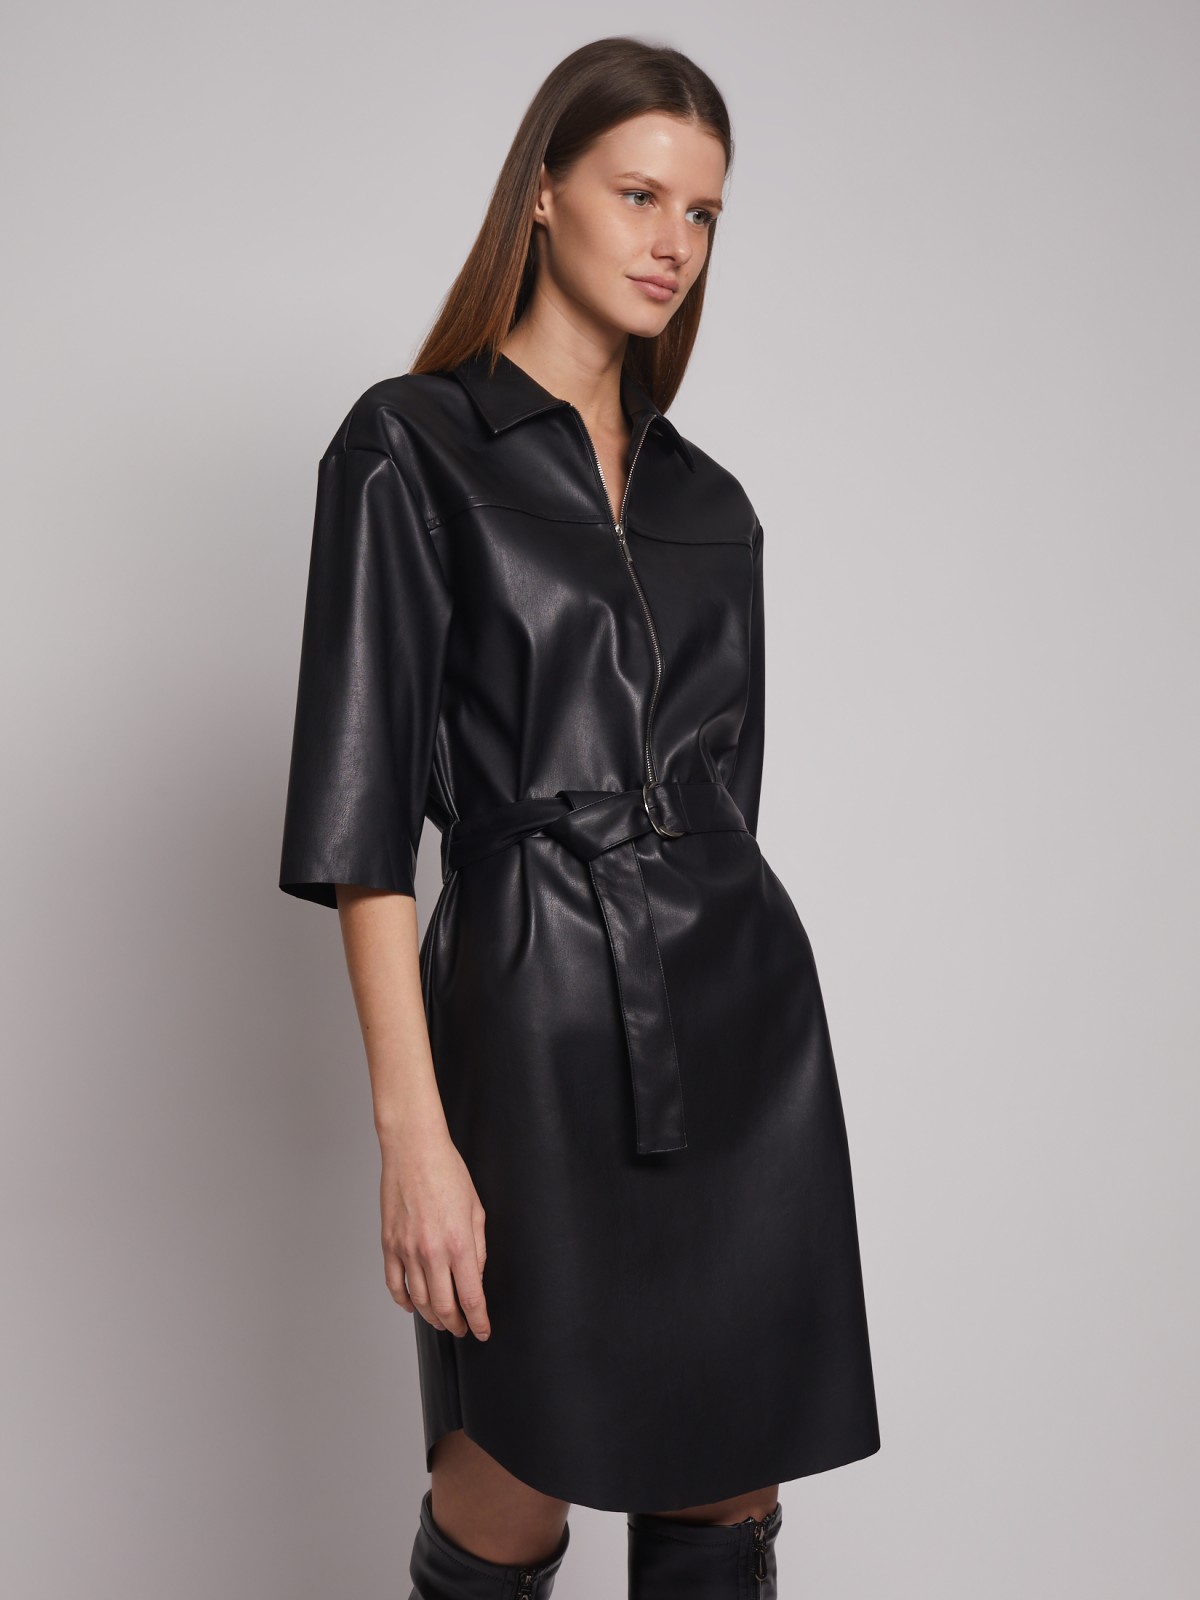 Платье-рубашка из экокожи с поясом zolla 223128259051, цвет черный, размер S - фото 1